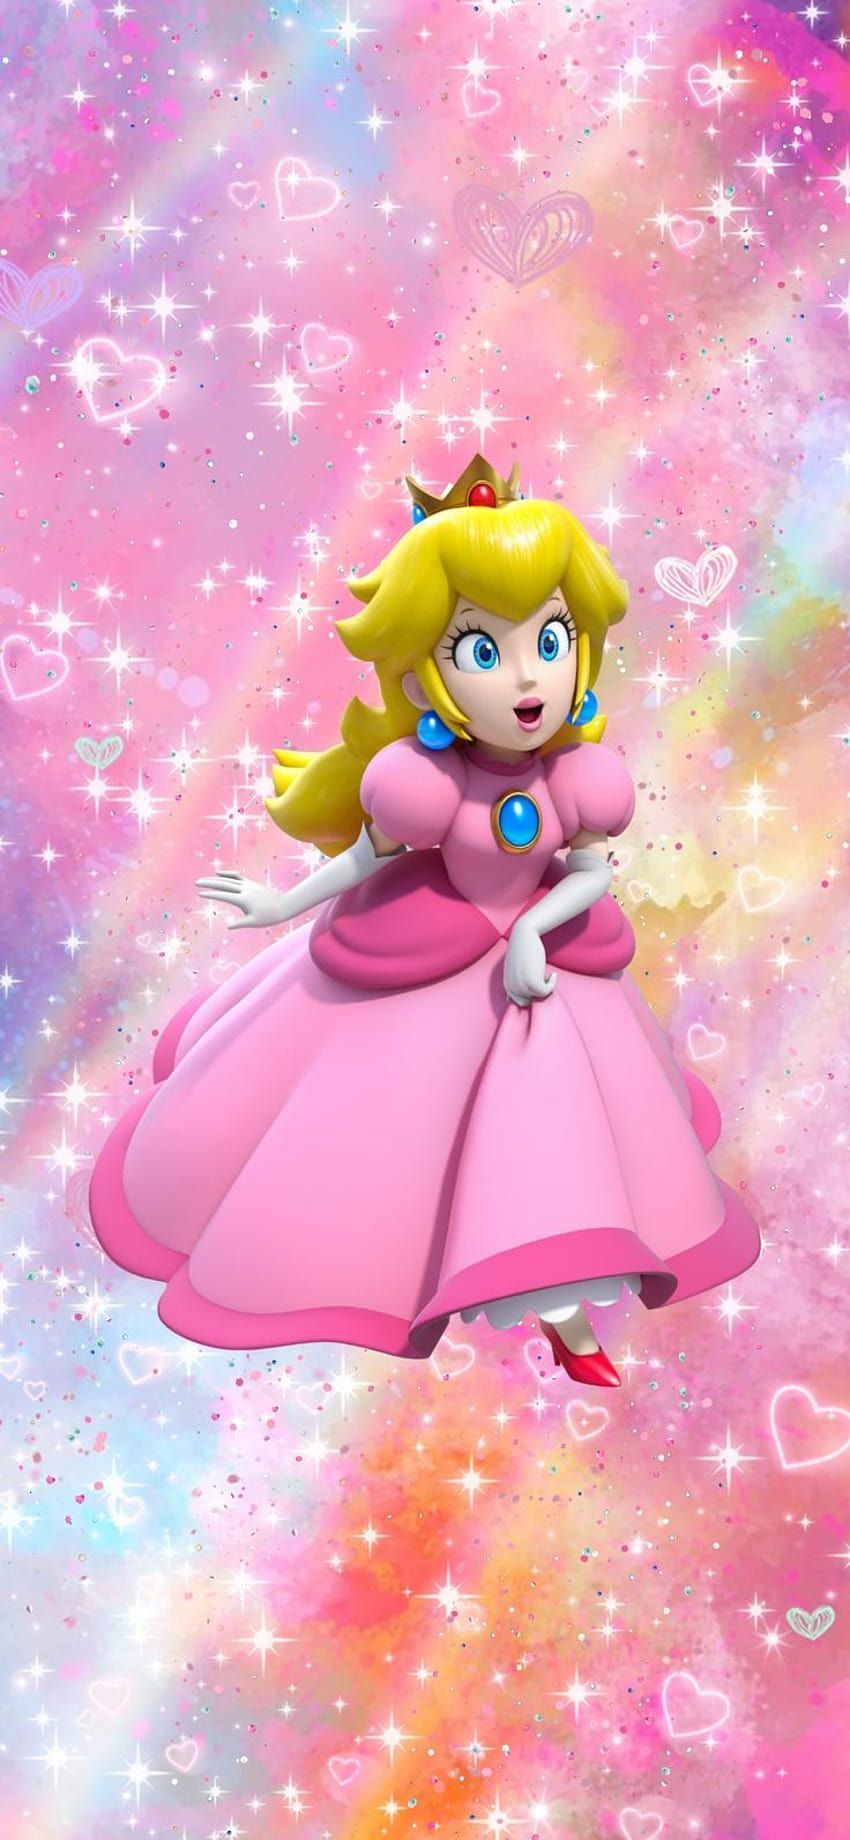 Nintendo Princess Peach aesthetic phone background, princess peach phone HD phone wallpaper